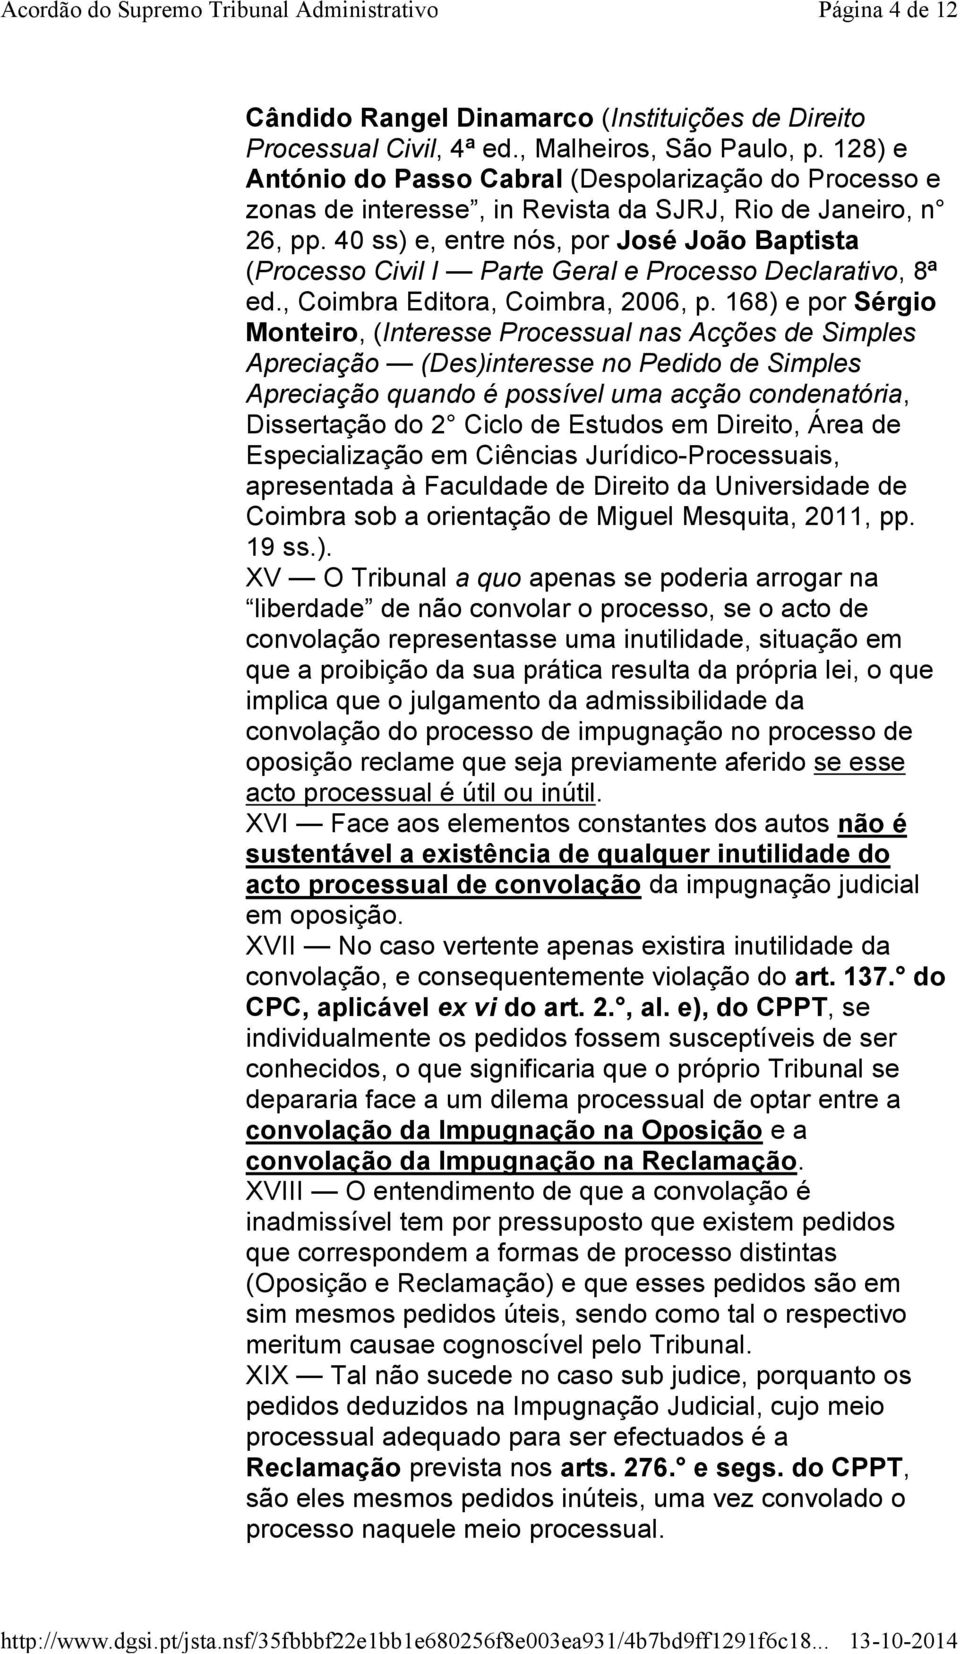 40 ss) e, entre nós, por José João Baptista (Processo Civil I Parte Geral e Processo Declarativo, 8ª ed., Coimbra Editora, Coimbra, 2006, p.